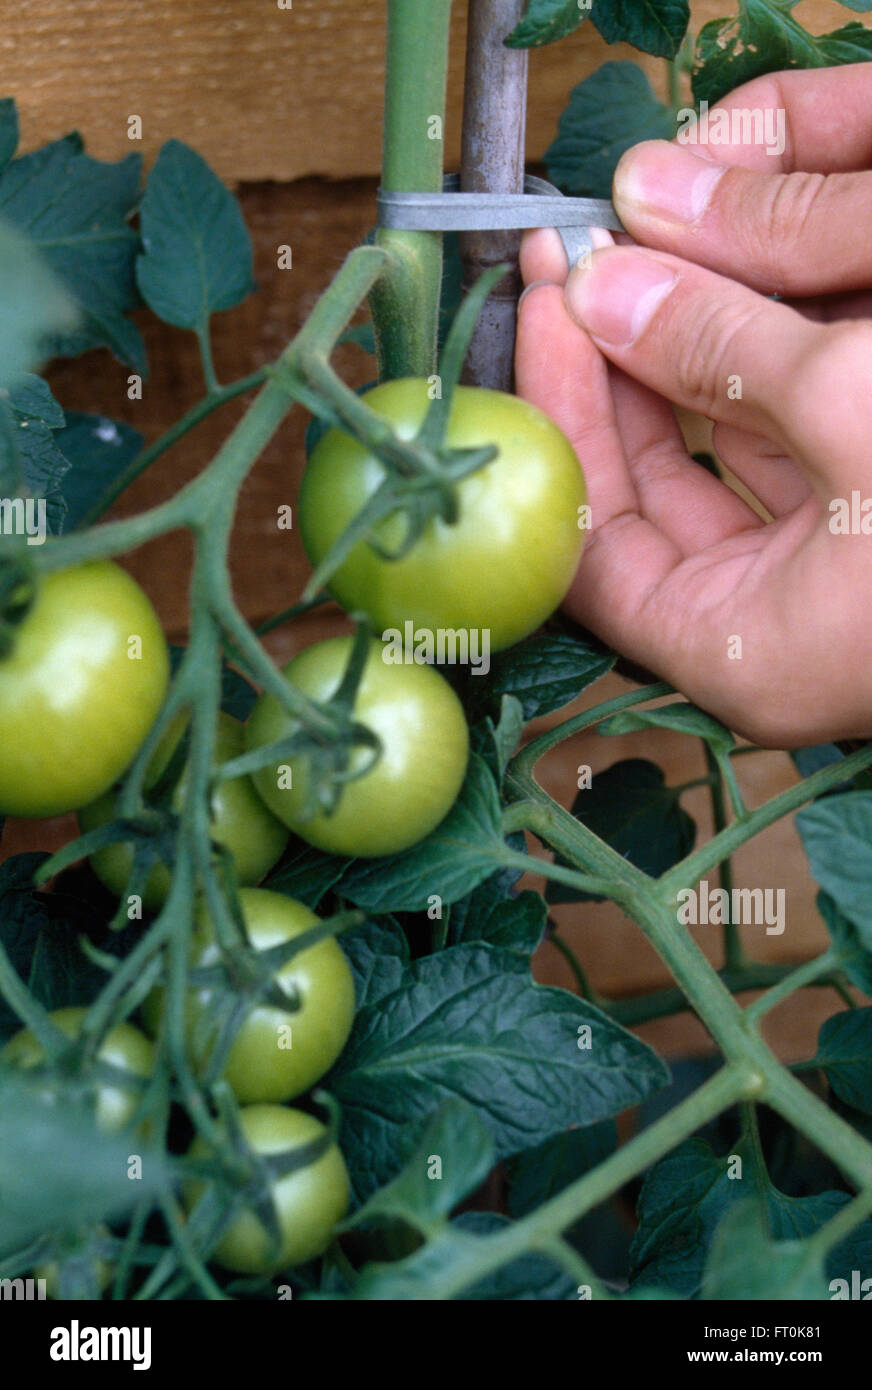 Nahaufnahme der Hände in grüne Tomaten zu einem Bambus-Pfahl binden Stockfoto